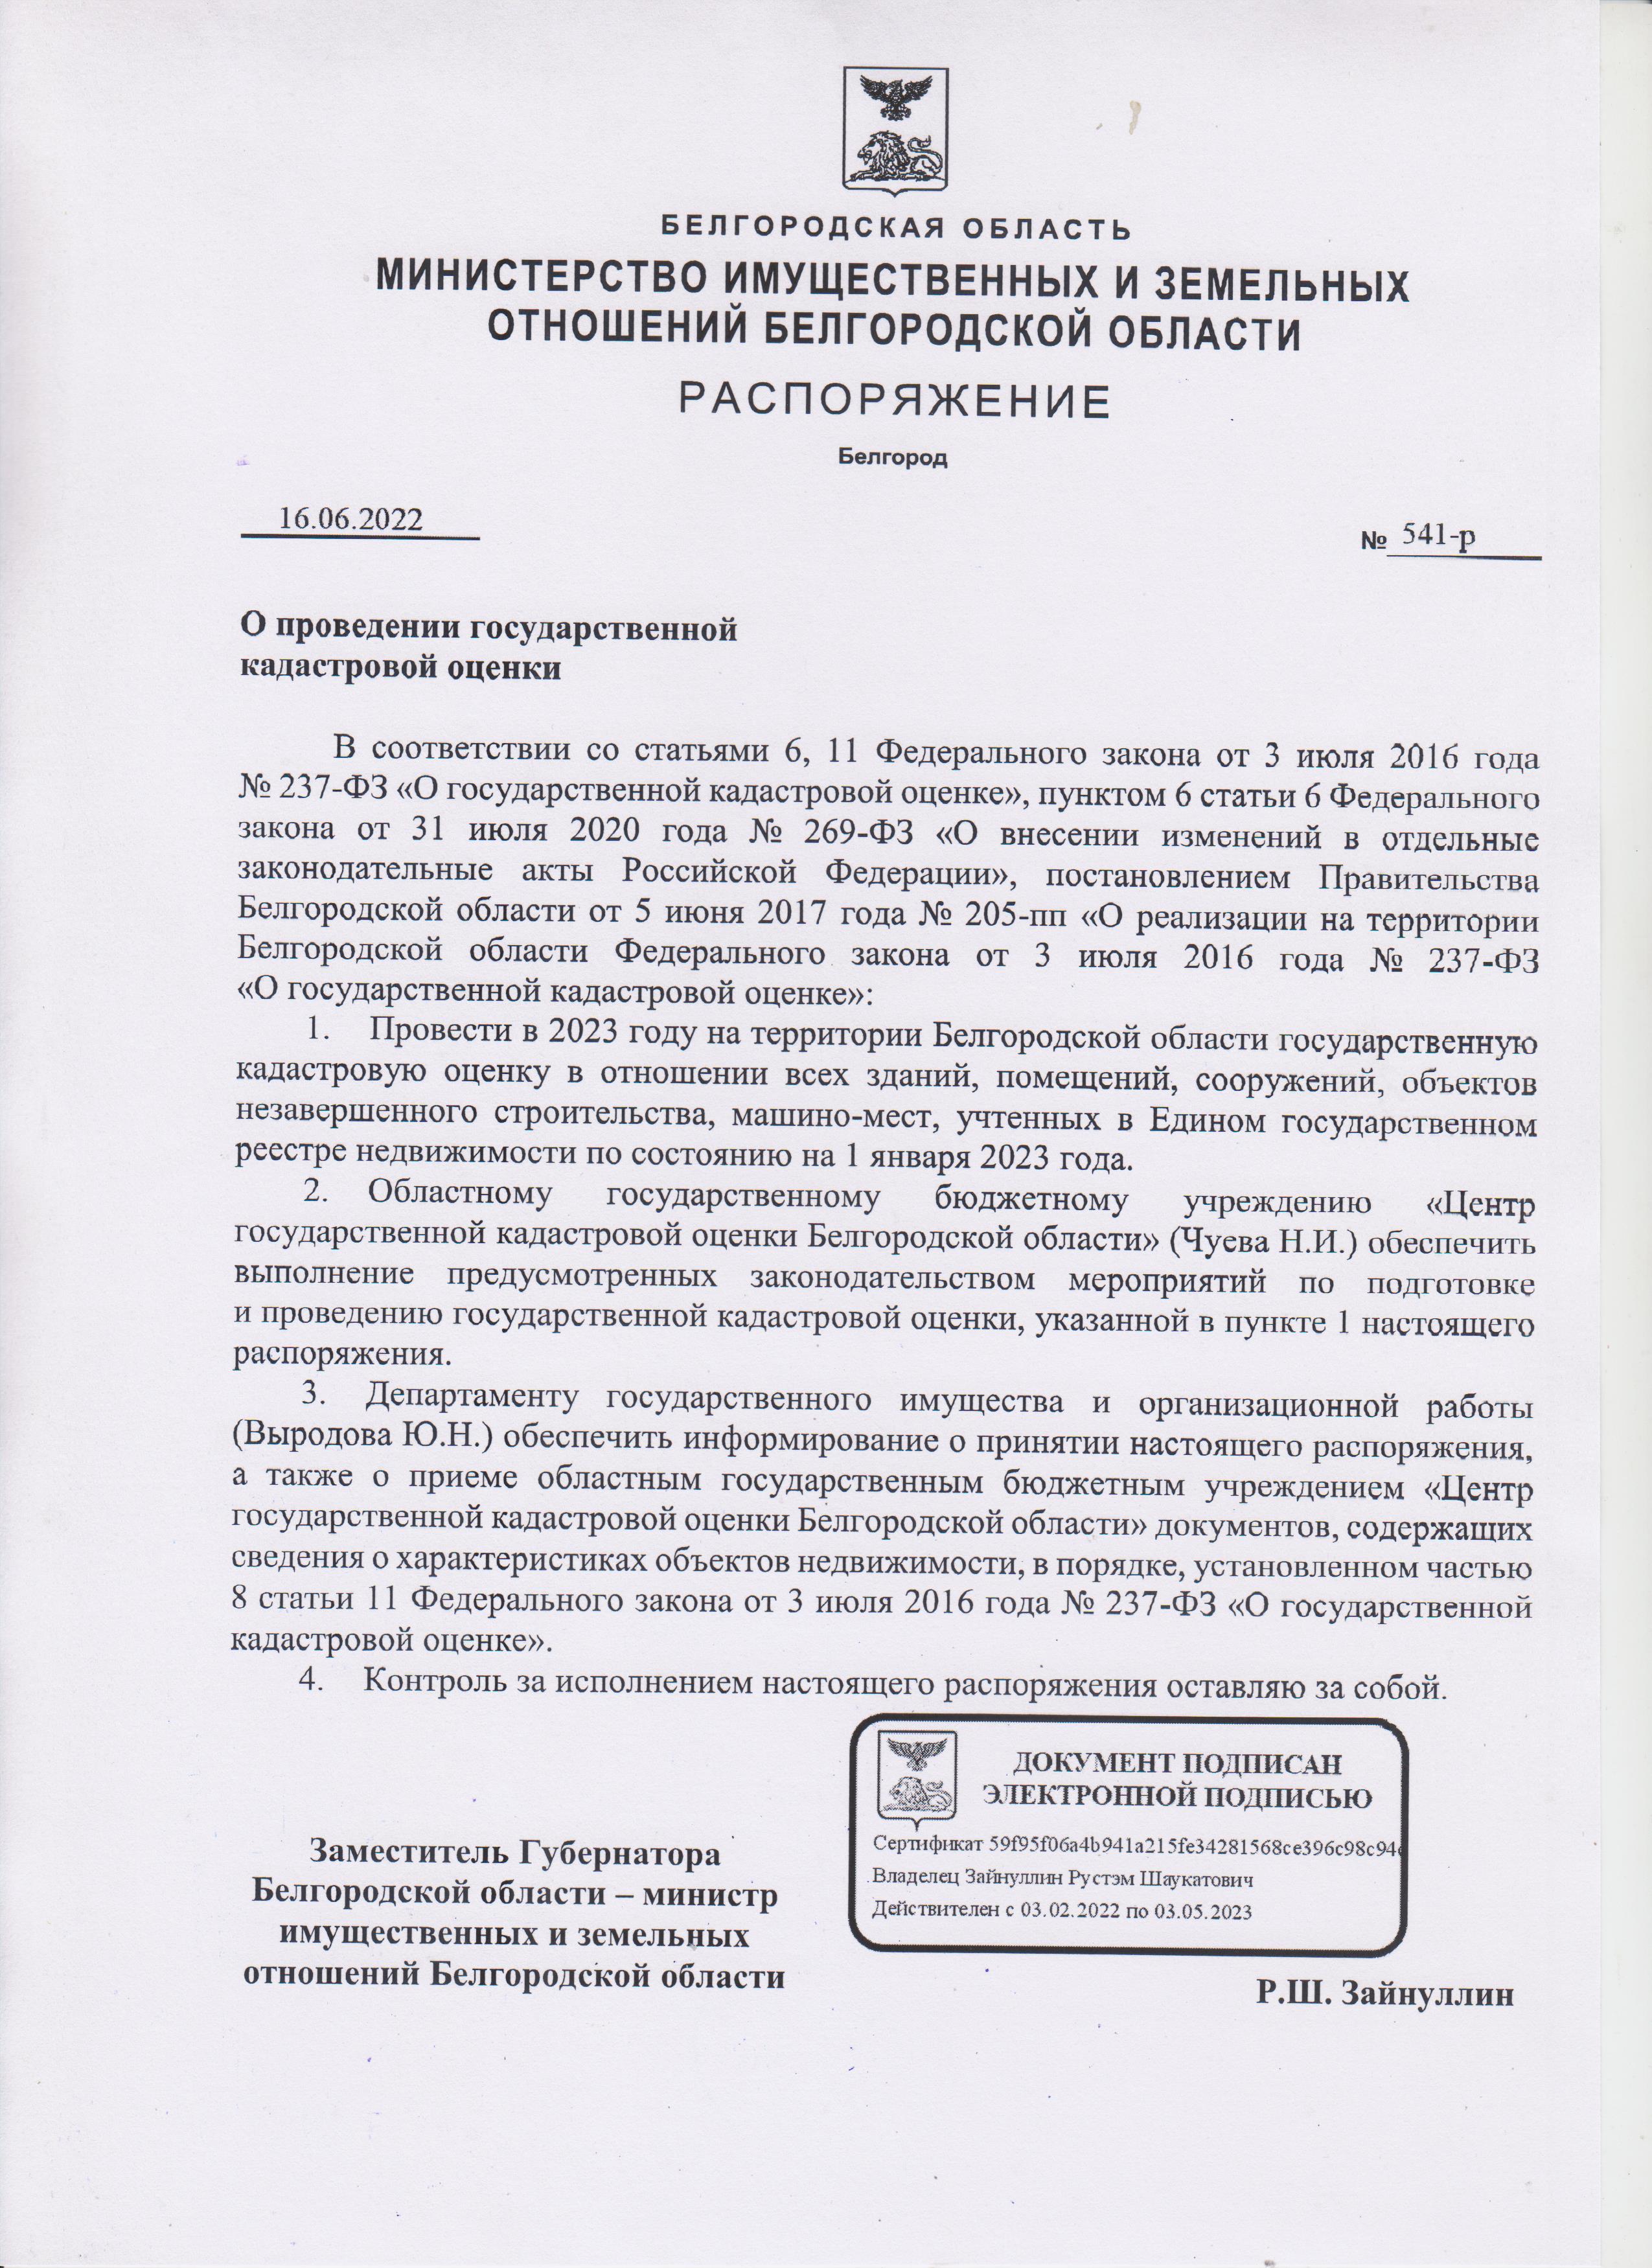 Распоряжение Министерства имущественных и земельных отношений Белгородской области от 16.06.2022 г. №541-р &quot;О проведении государственной кадастровой оценки&quot;.